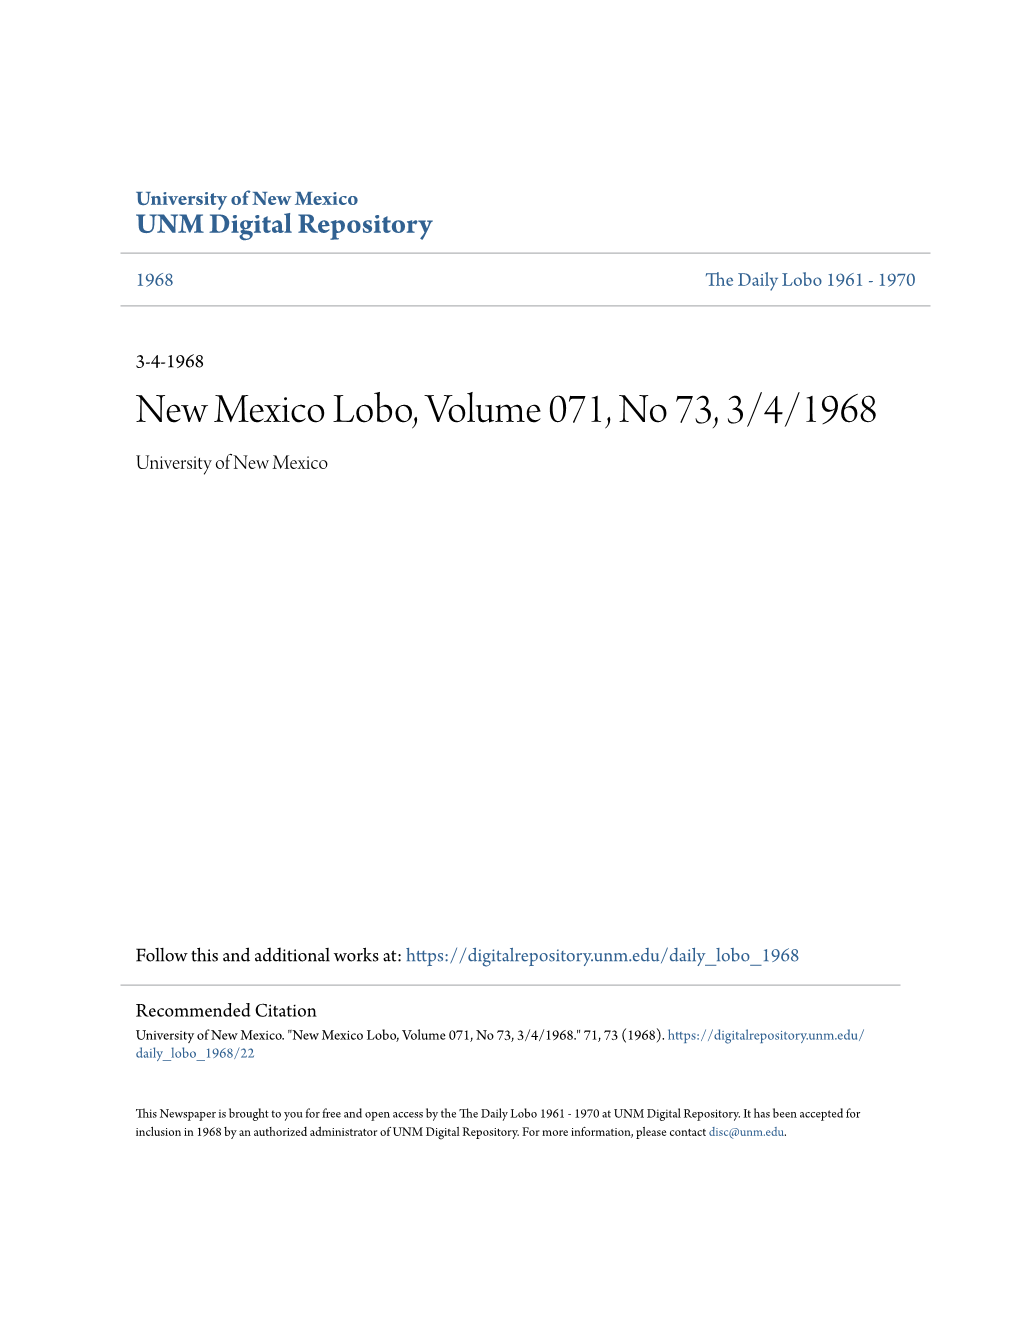 New Mexico Lobo, Volume 071, No 73, 3/4/1968 University of New Mexico